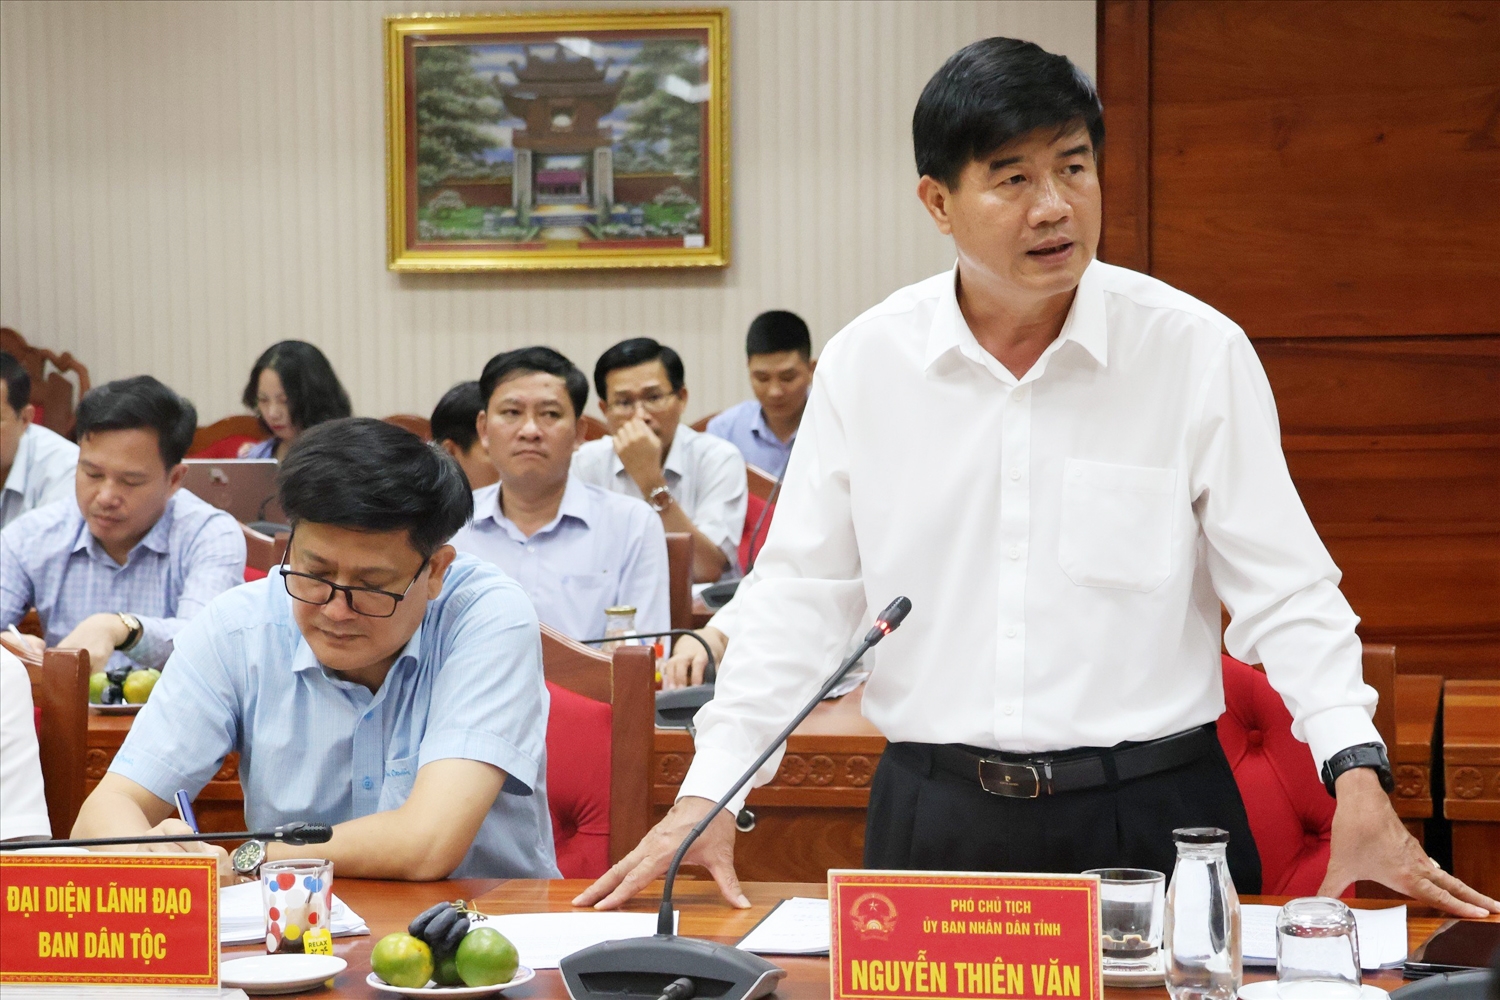 Phó chủ tịch UBND tỉnh Đắk Lắk Nguyễn Thiên Văn phát biểu tại buổi công bố quyết định thanh tra